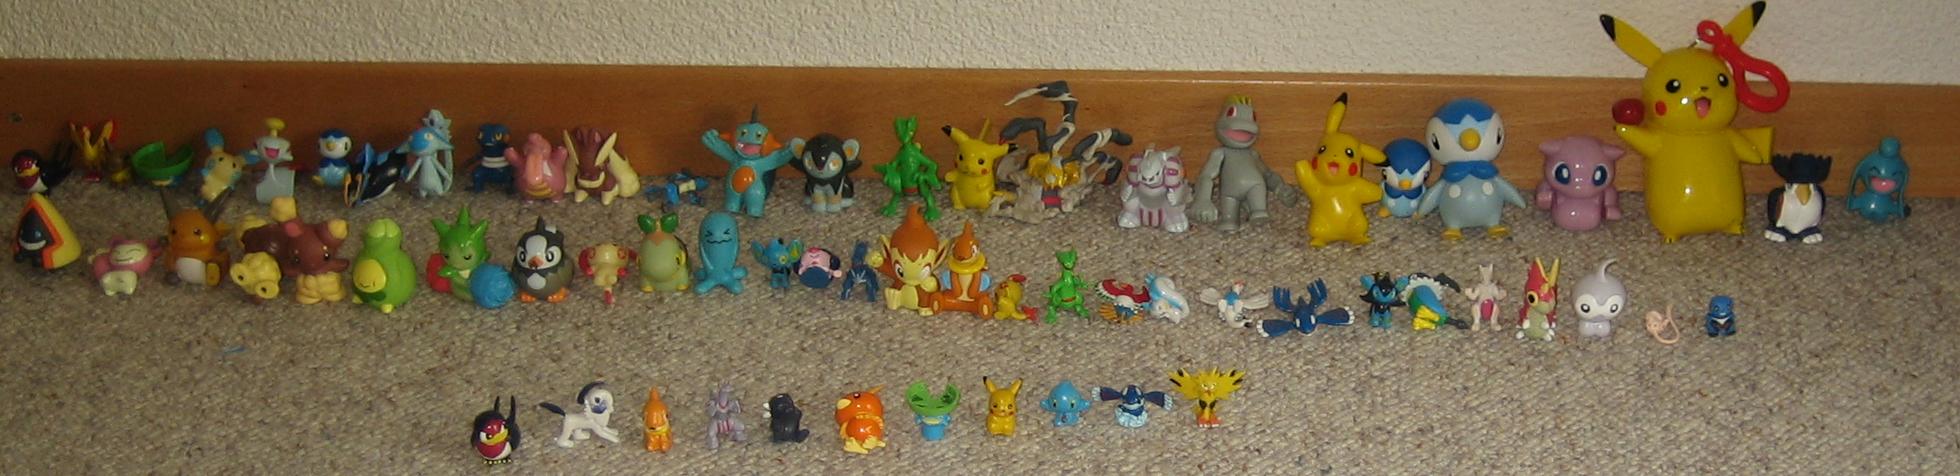 Meine Pokémon Figuren (ALLE!)